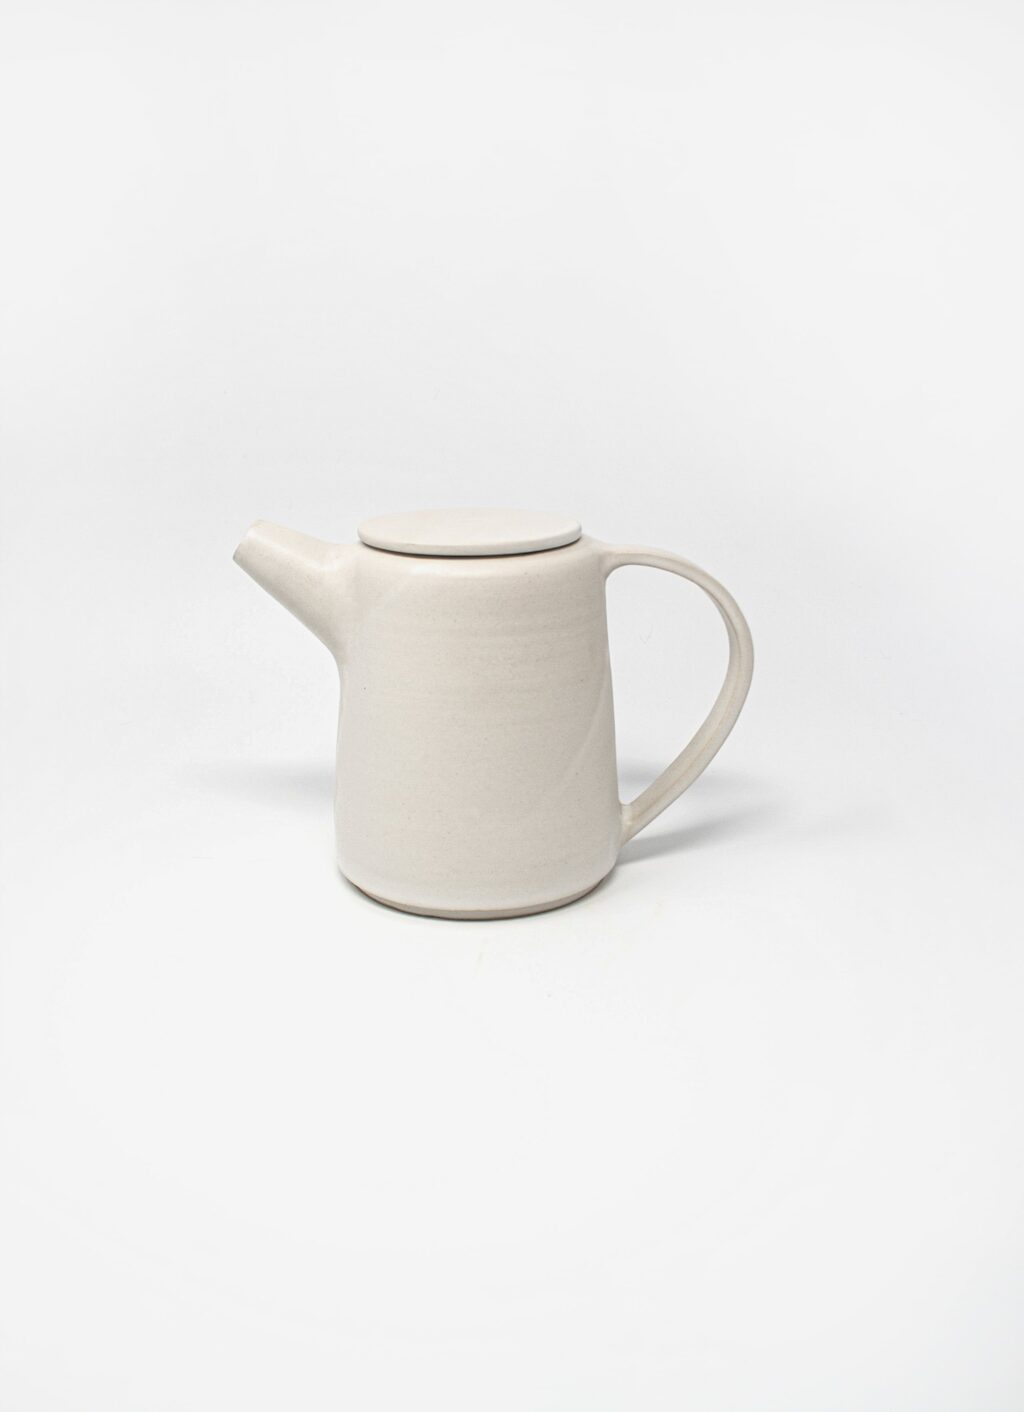 Kolektiv DVA - Handmade Stoneware Teapot - white matte glazed